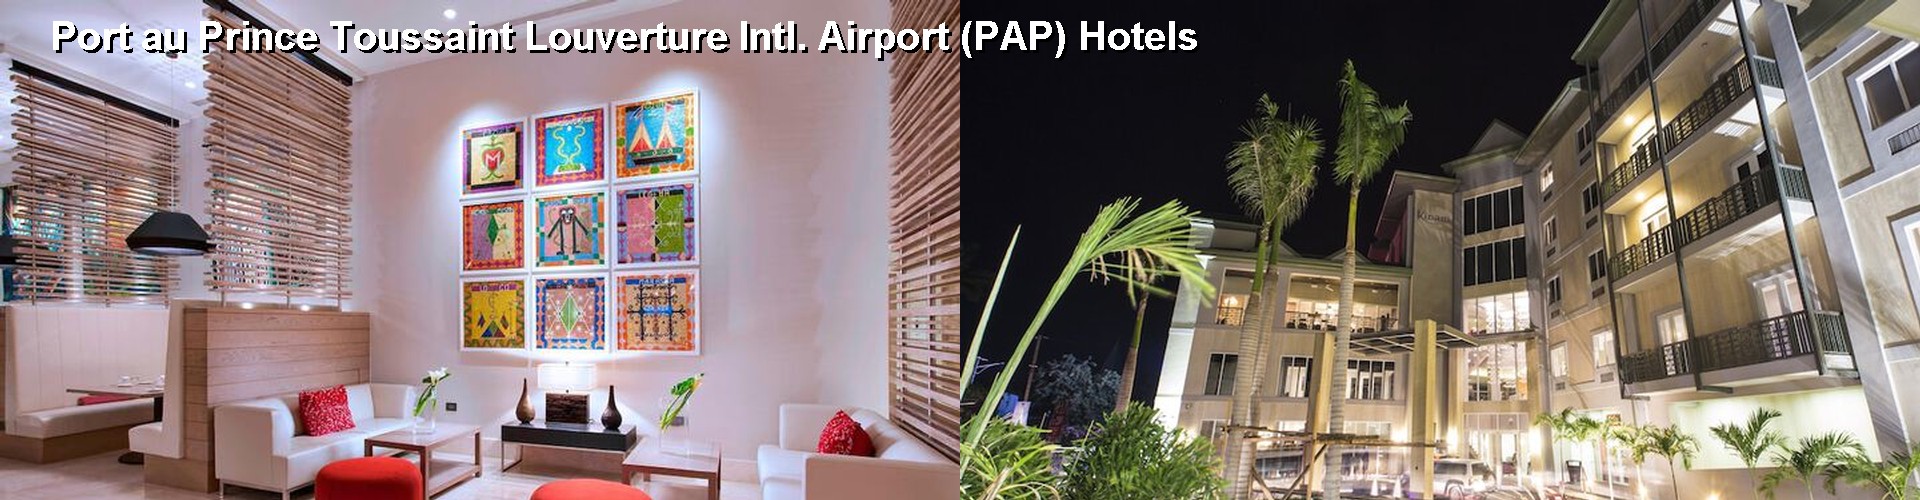 5 Best Hotels near Port au Prince Toussaint Louverture Intl. Airport (PAP)